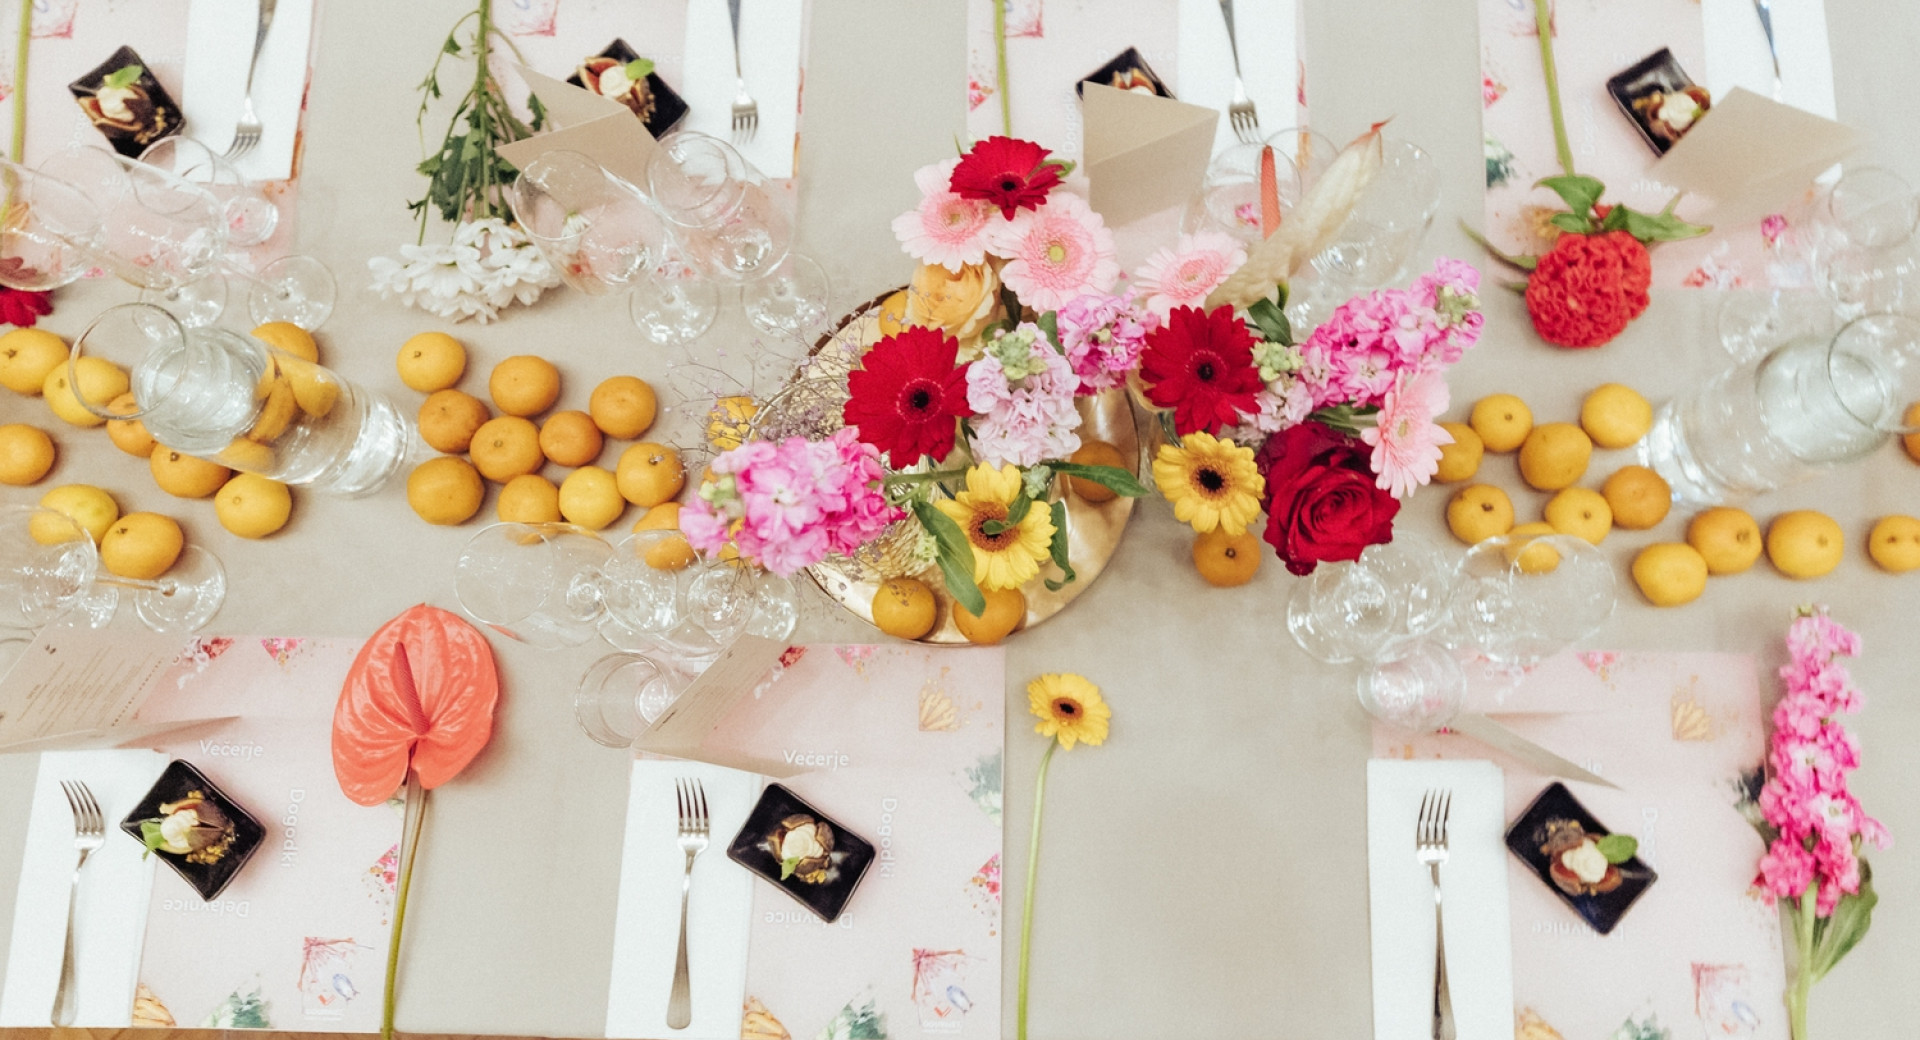 Z mandarinami in cvetjem okrašena pogrnjena miza